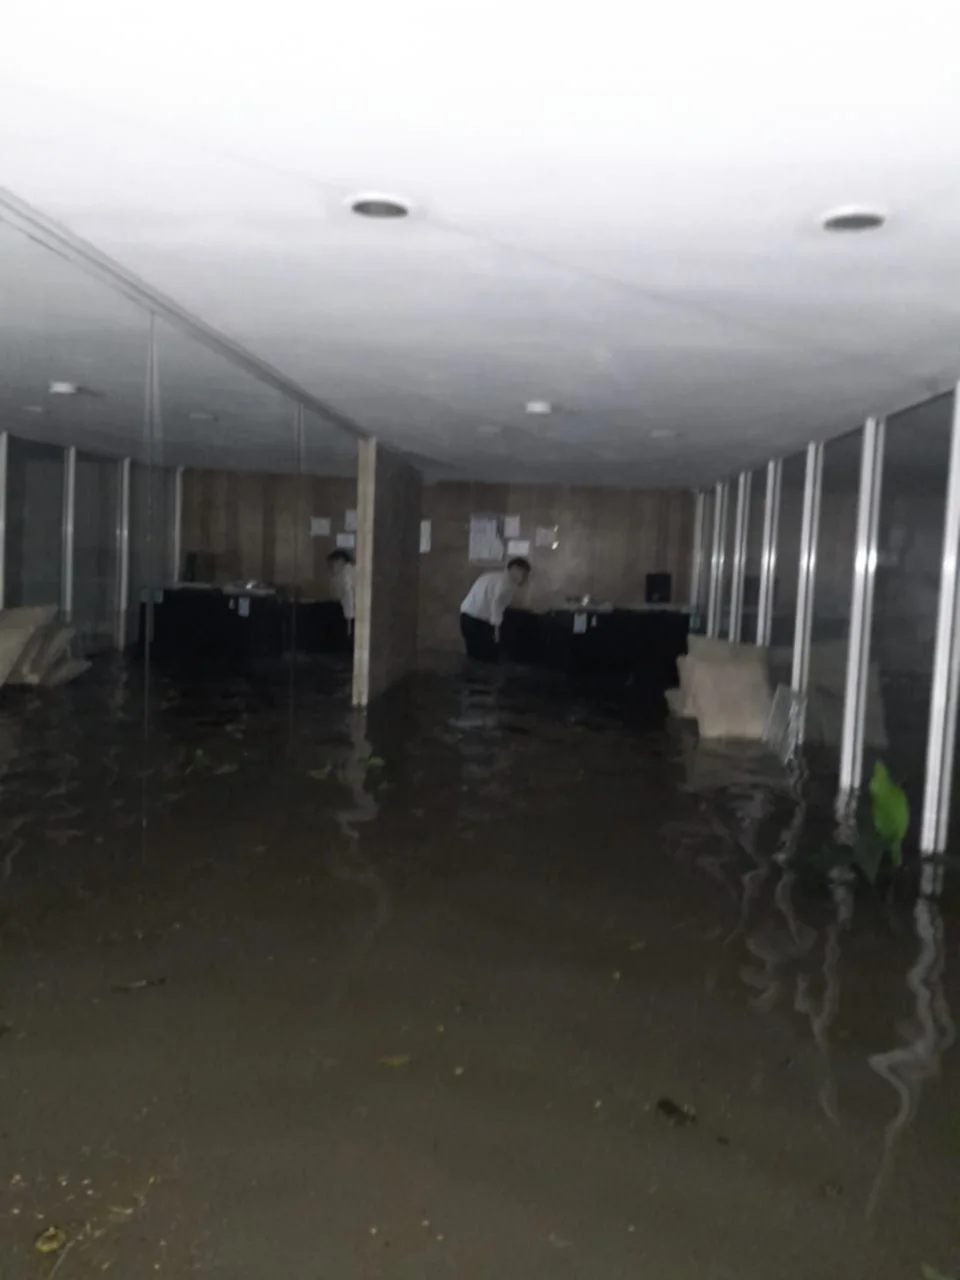 Autos y viviendas bajo agua: las postales de la inundación en Corrientes